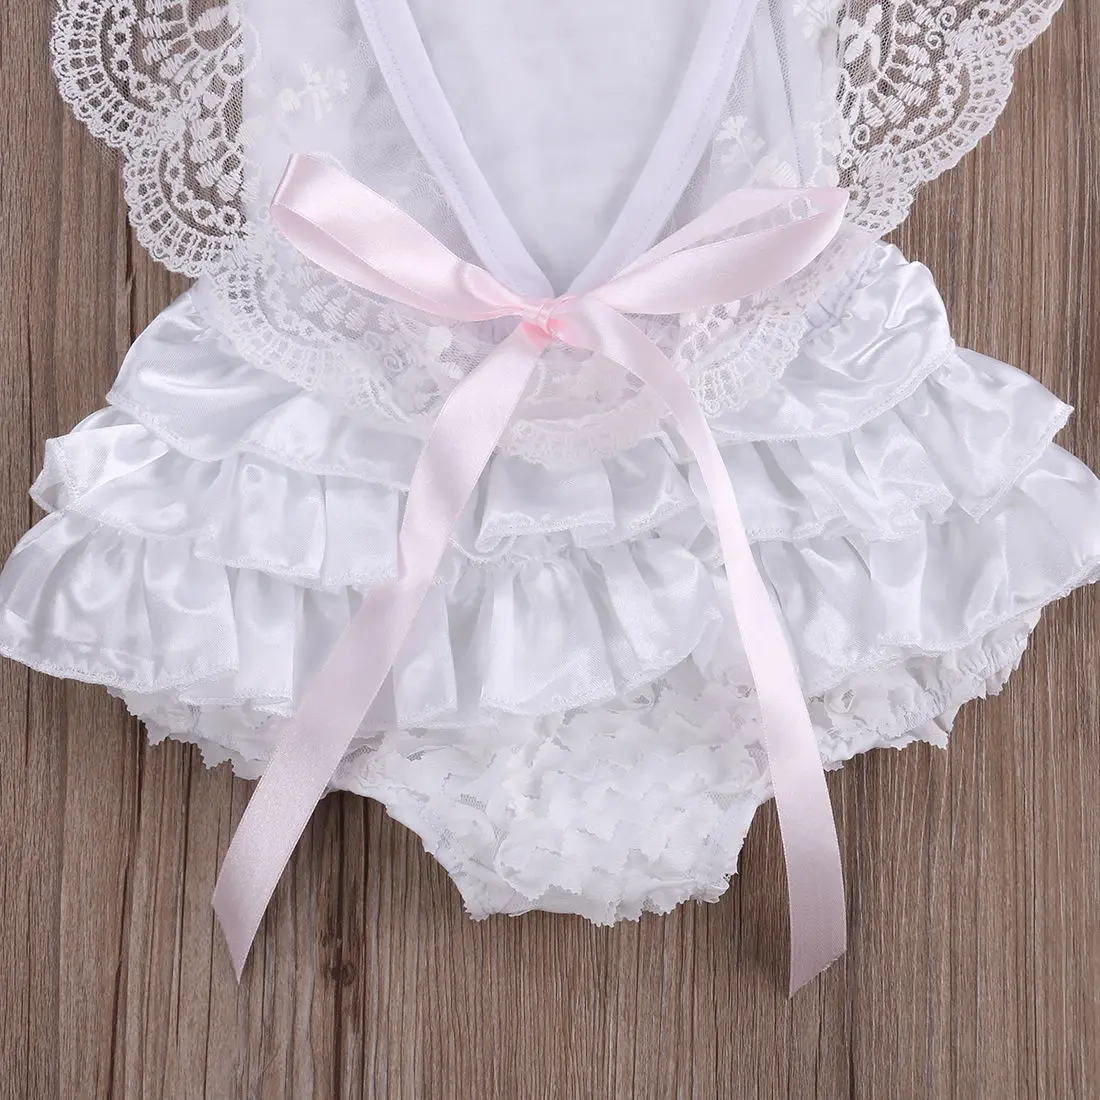 Emmaaby/милые комбинезоны для девочек от 0 до 18 месяцев, Одежда для новорожденных девочек кружевной комбинезон с цветочным рисунком, пляжный костюм